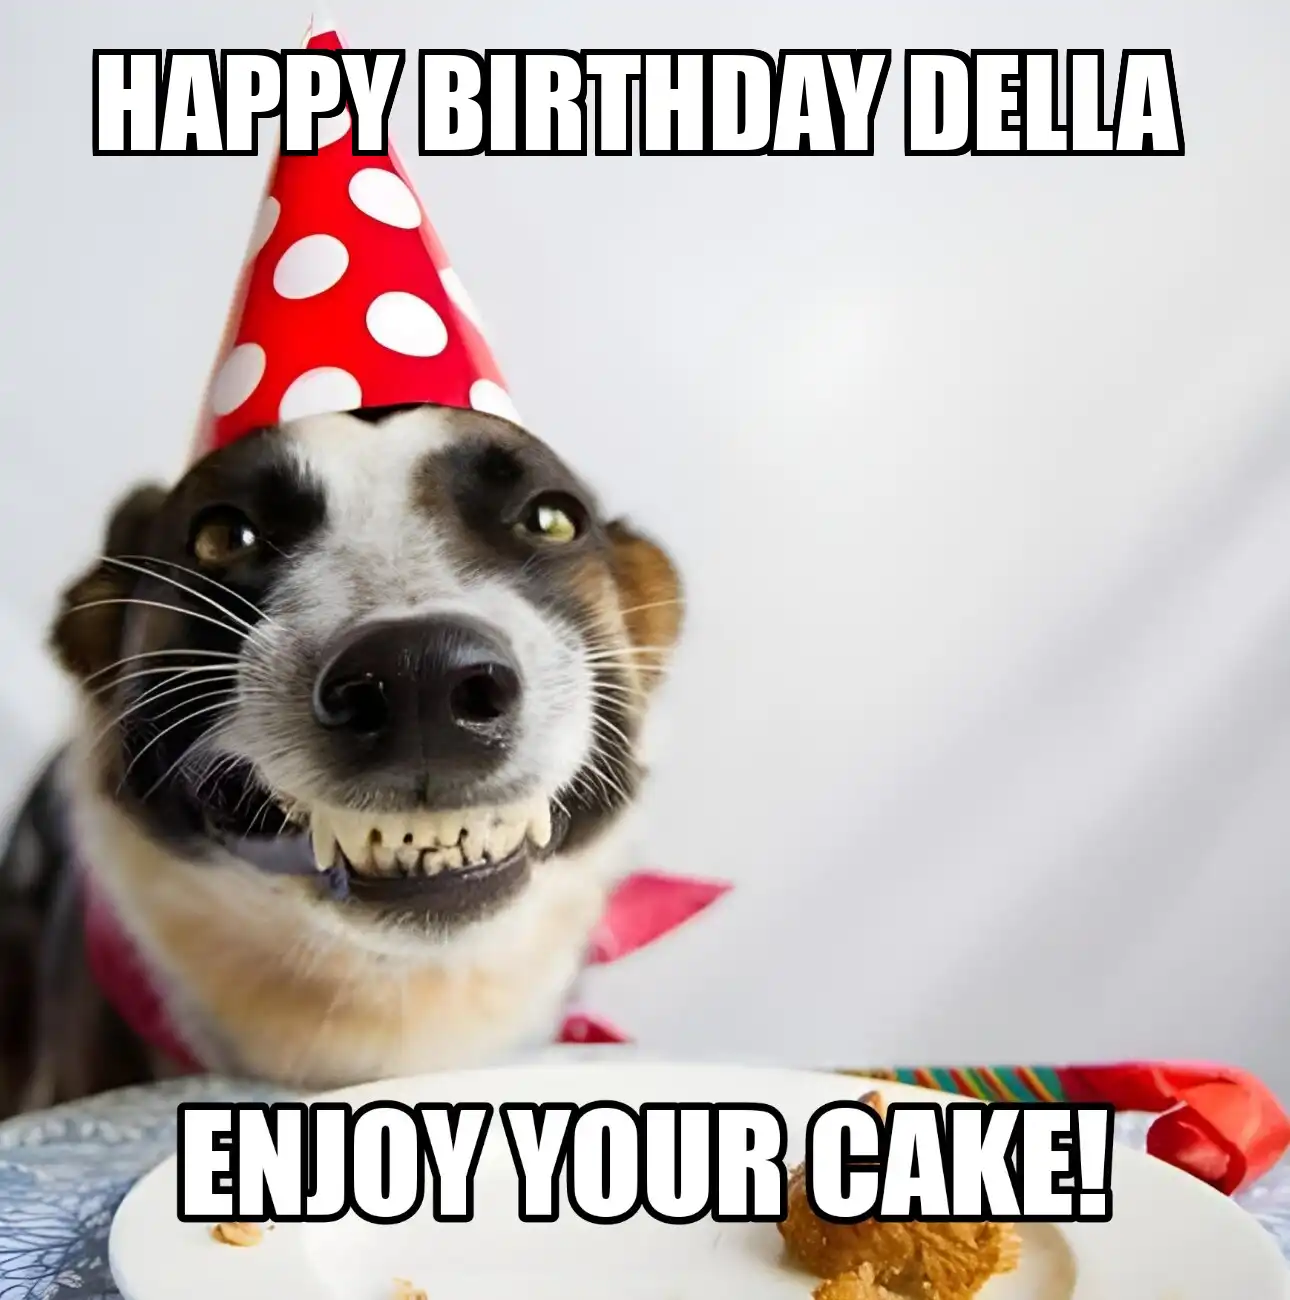 Happy Birthday Della Enjoy Your Cake Dog Meme